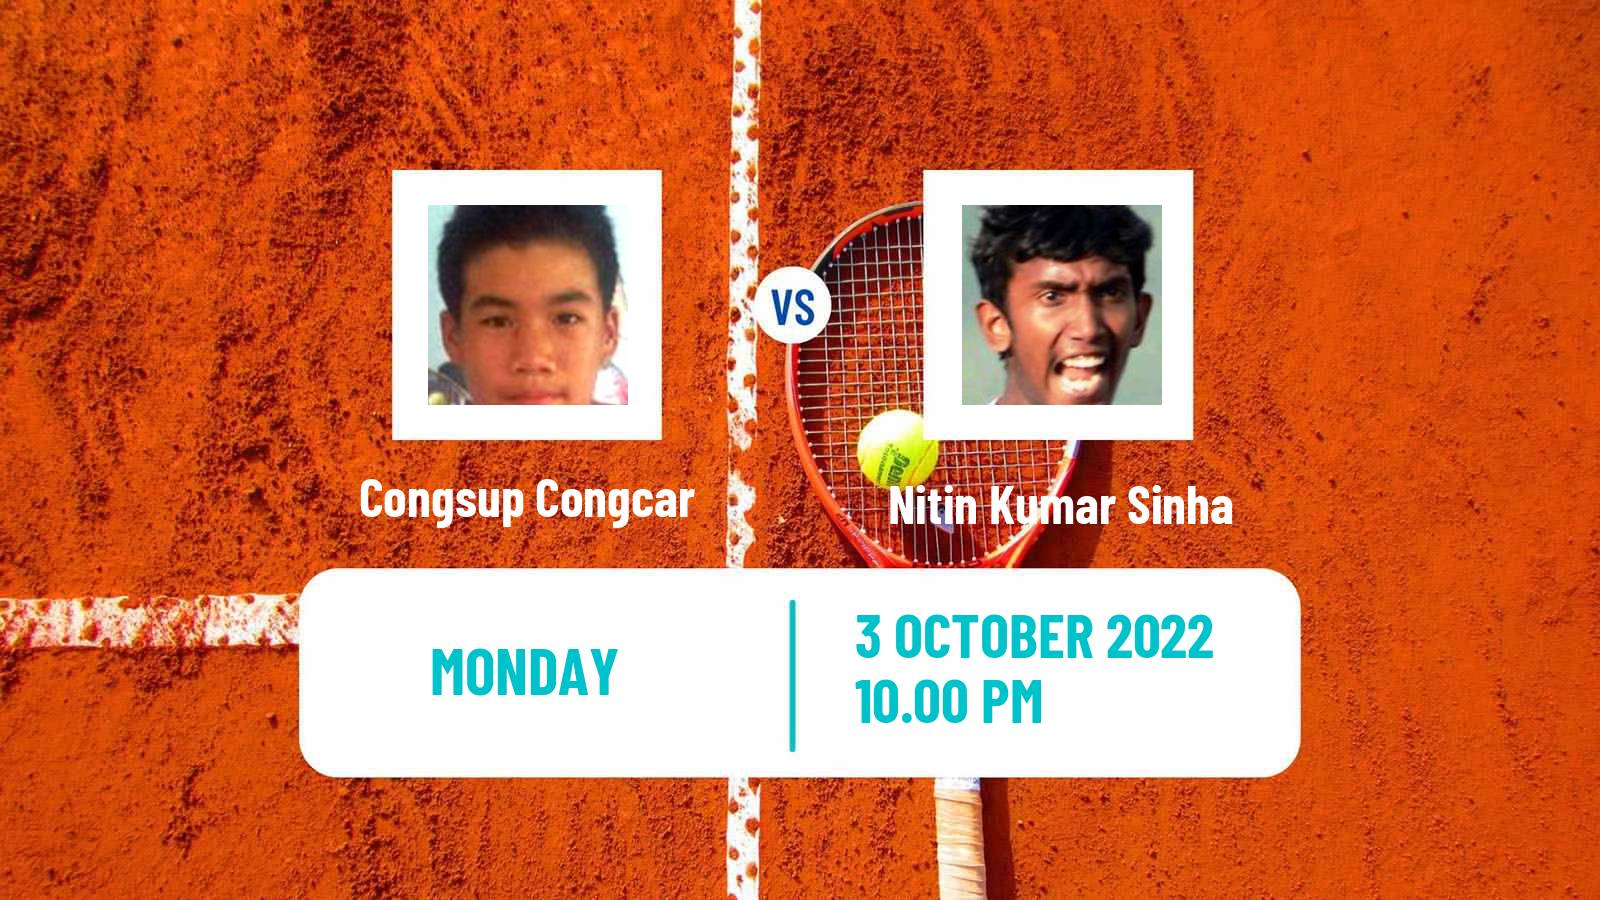 Tennis ITF Tournaments Congsup Congcar - Nitin Kumar Sinha